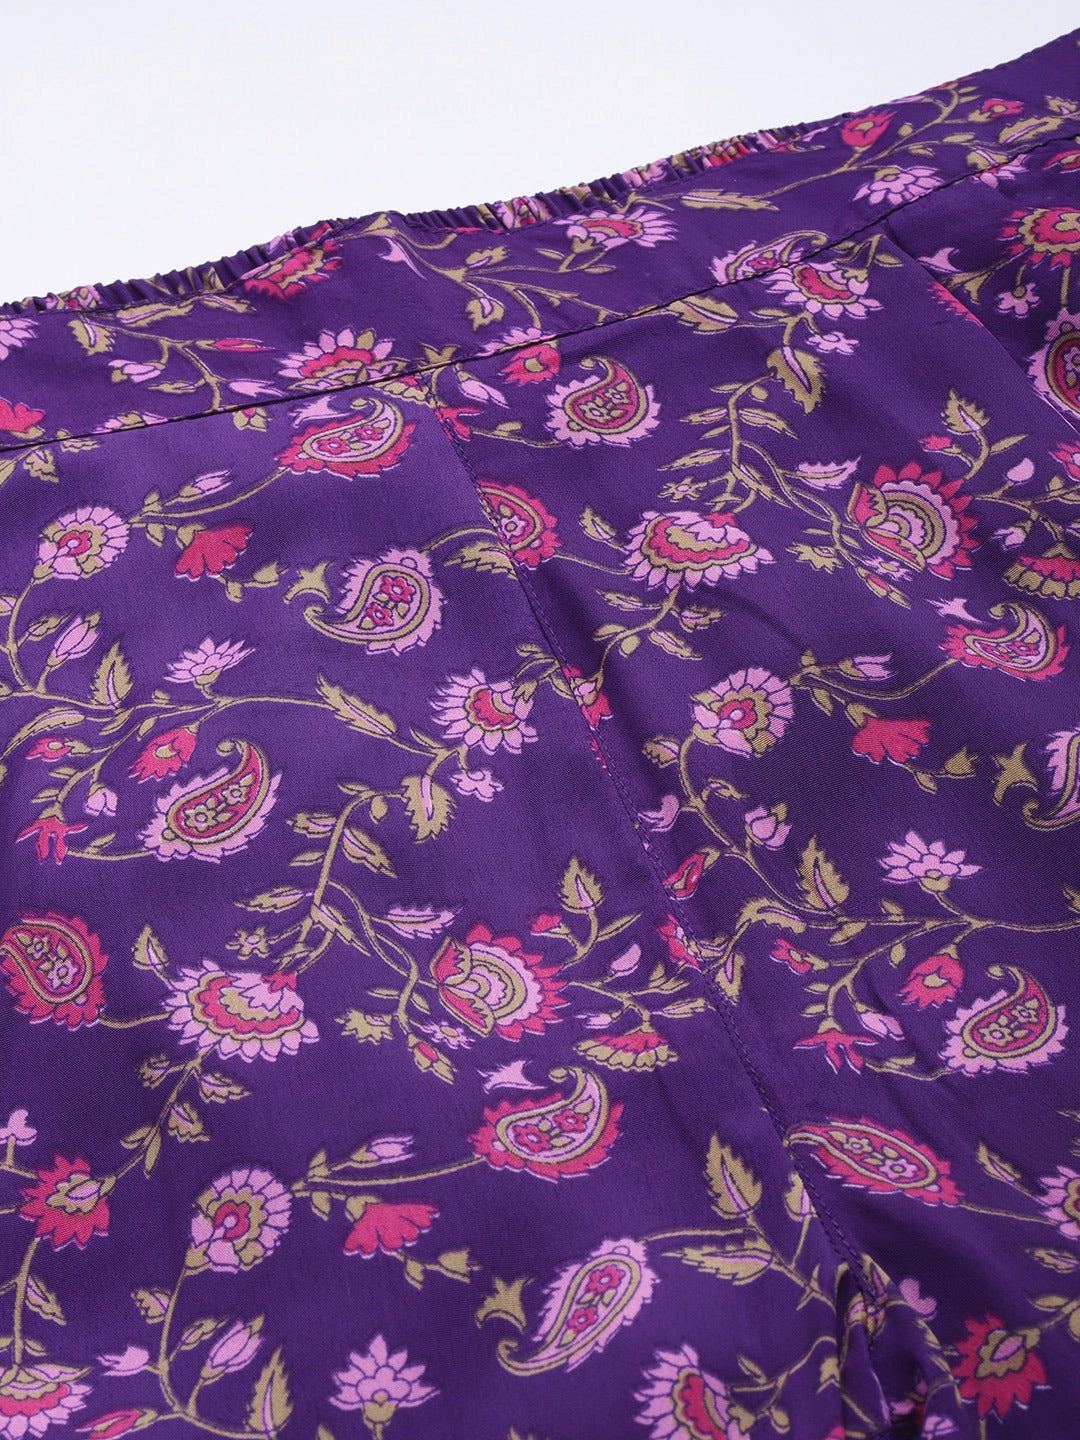 Women Purple Floral Pencil Pants